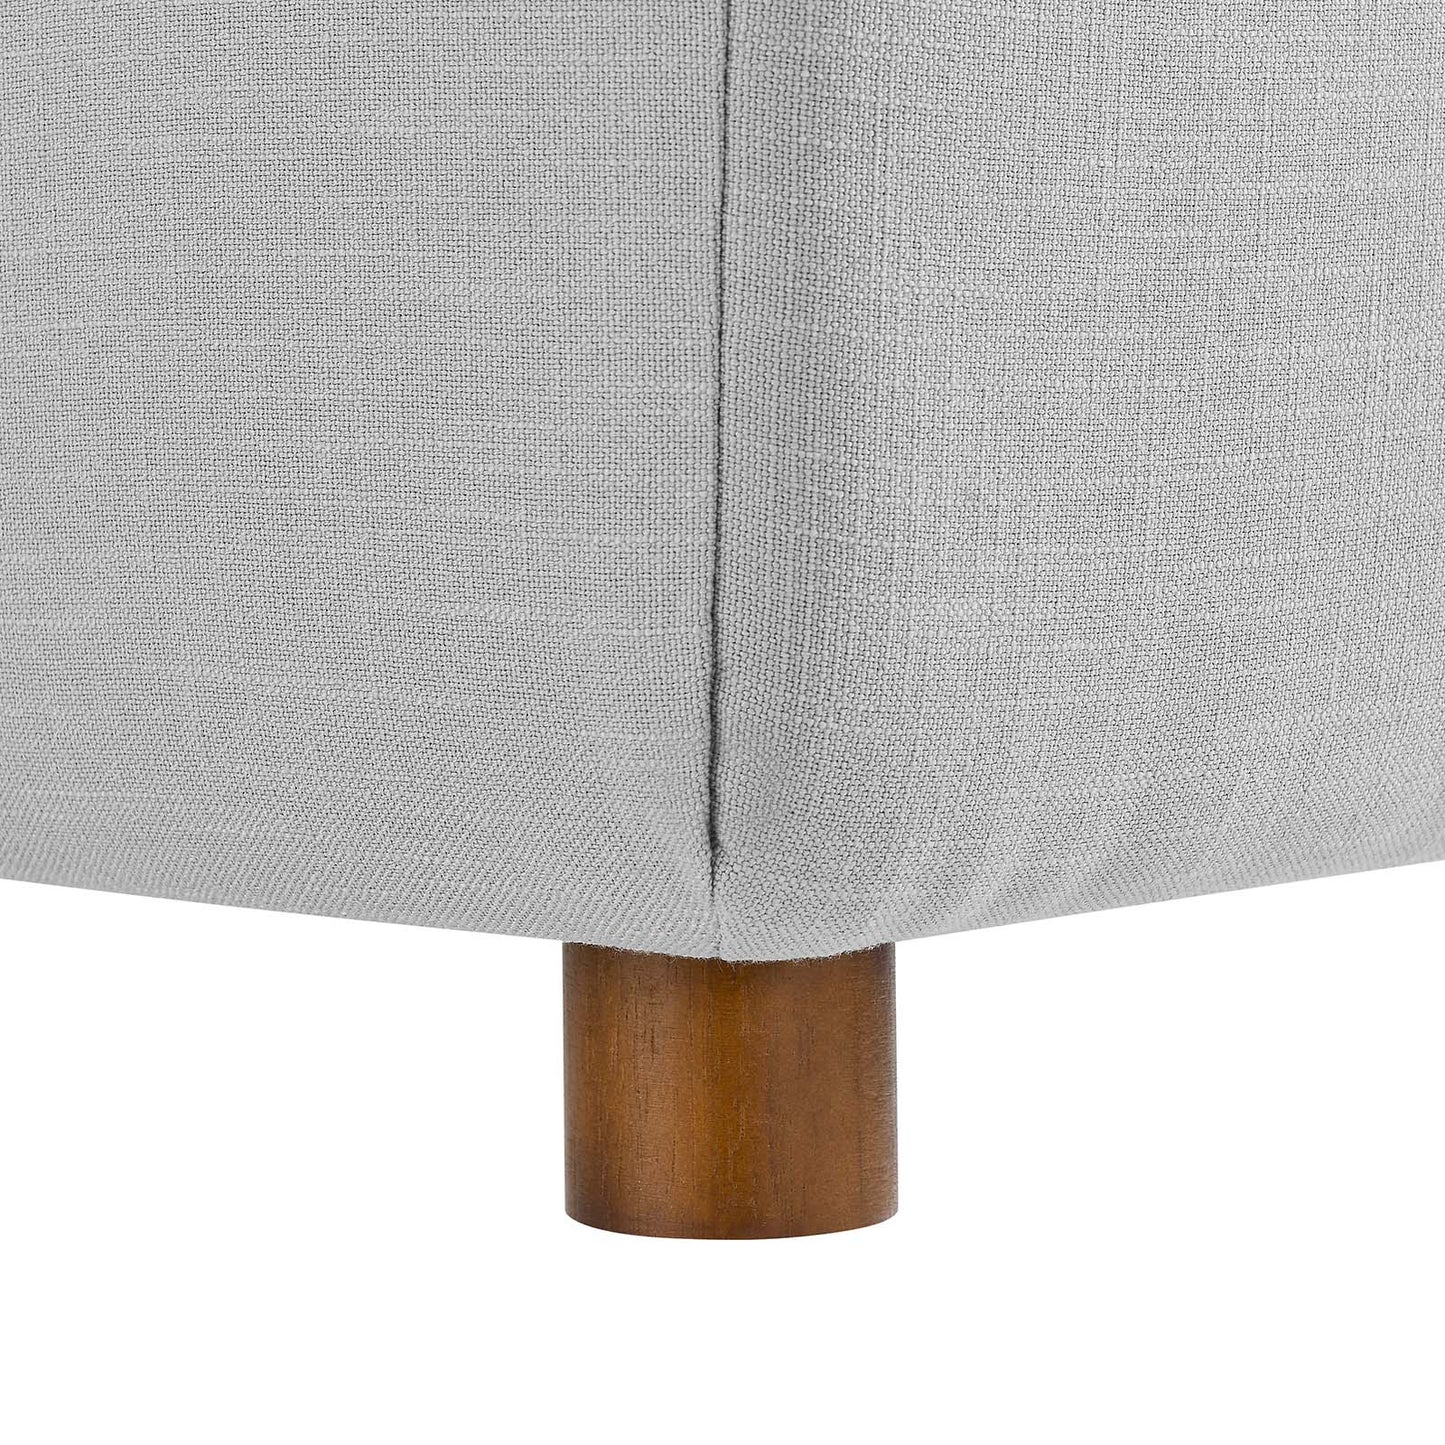 Commix Down Filled Overstuffed 2 Piece Sectional Sofa Set Light Gray EEI-3354-LGR